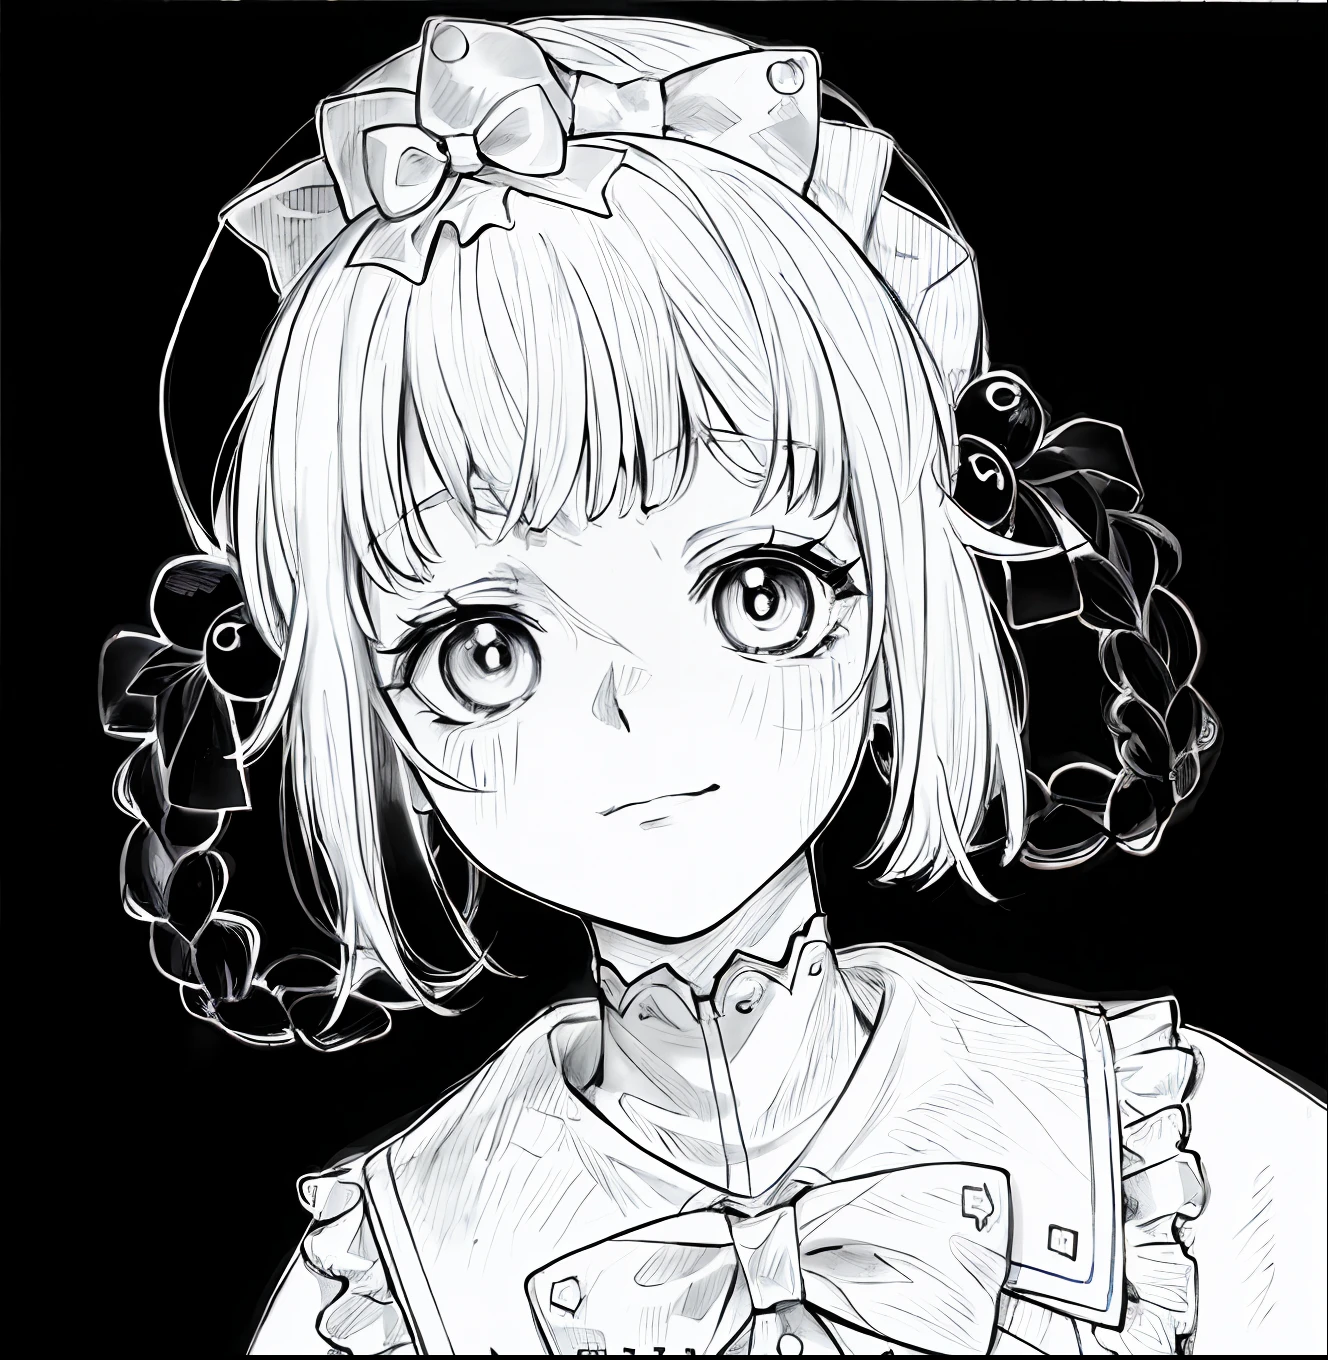 eine Zeichnung eines Mädchens mit einer Schleife und einem Kleid, saubere Anime-Umrisse, lineart, sauberer, detaillierter Anime-Stil, saubere Lineart, Einfache Strichzeichnung, Kawaii realistisches Porträt, detaillierter Manga-Stil, lineart behance hd, perfekte Lineart, Zeichnung im Anime-Stil, traditioneller Zeichenstil, flache Schattierung im Anime-Stil, dickes Strichmännchen, detailliertes, weiches Anime-Gesicht